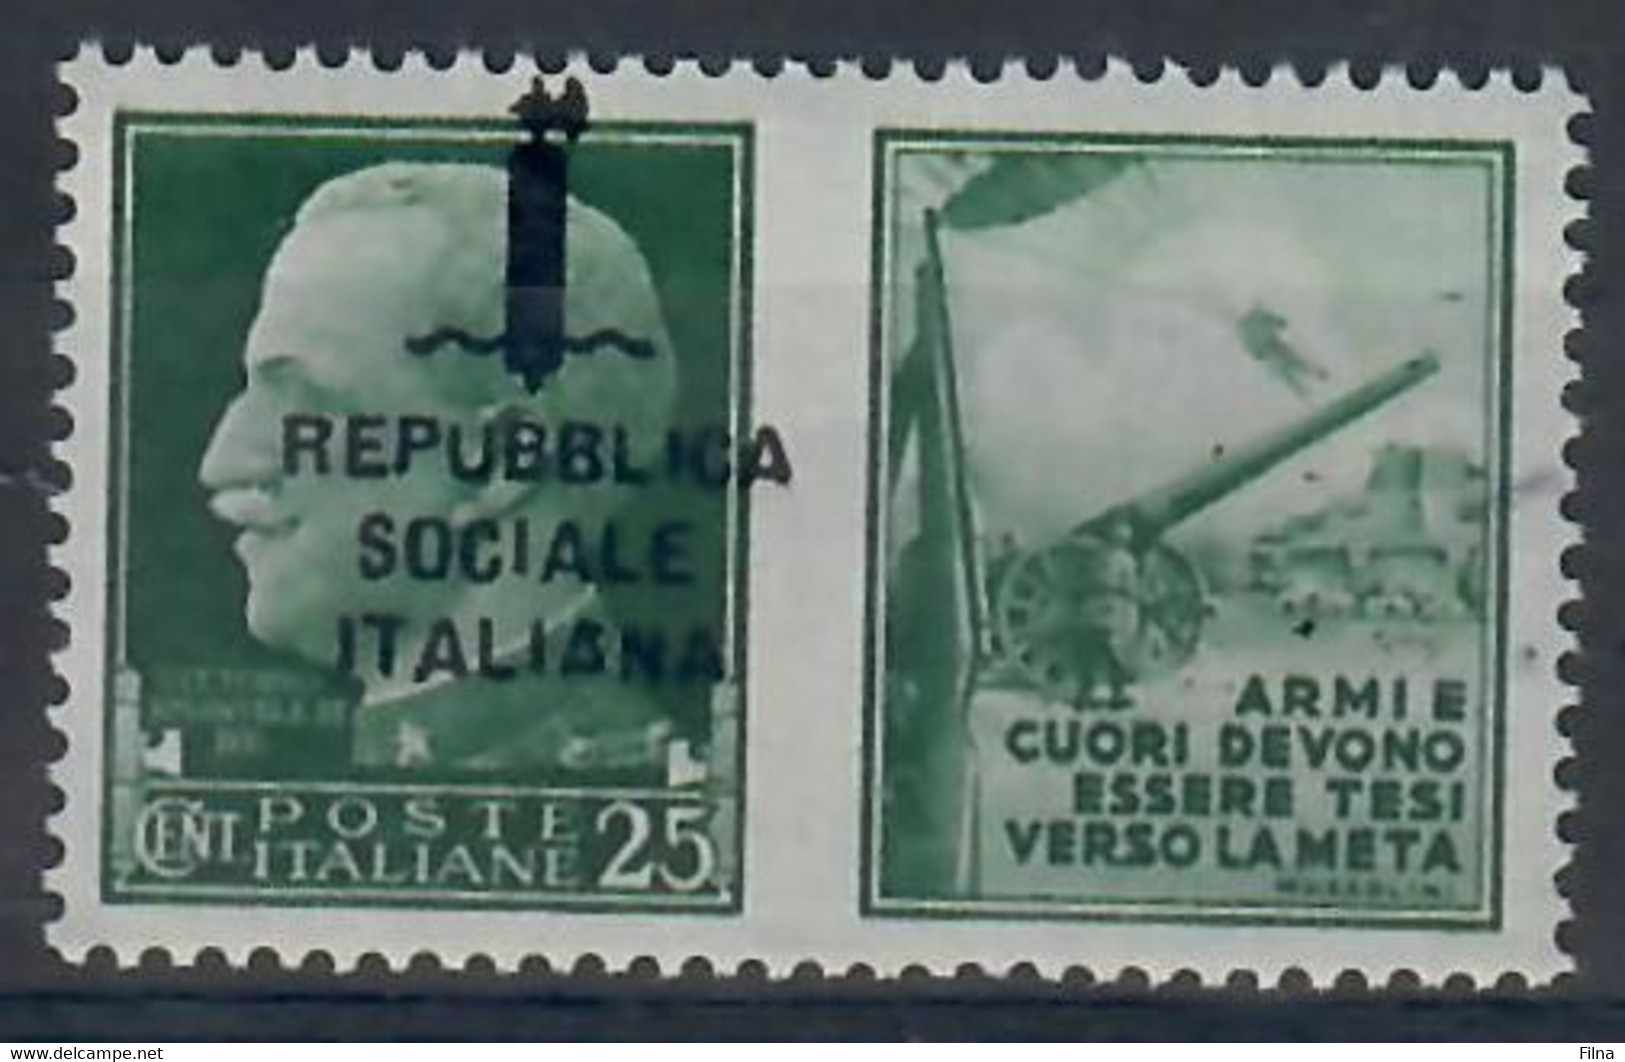 ITALIA - REPUBBLICA SOCIALE ITALIANA 1944 - PROPAGANDA DI GUERRA - 25 C. - VARIETA' SOPRASTAMPA SPOSTATA  - MNH/** - War Propaganda